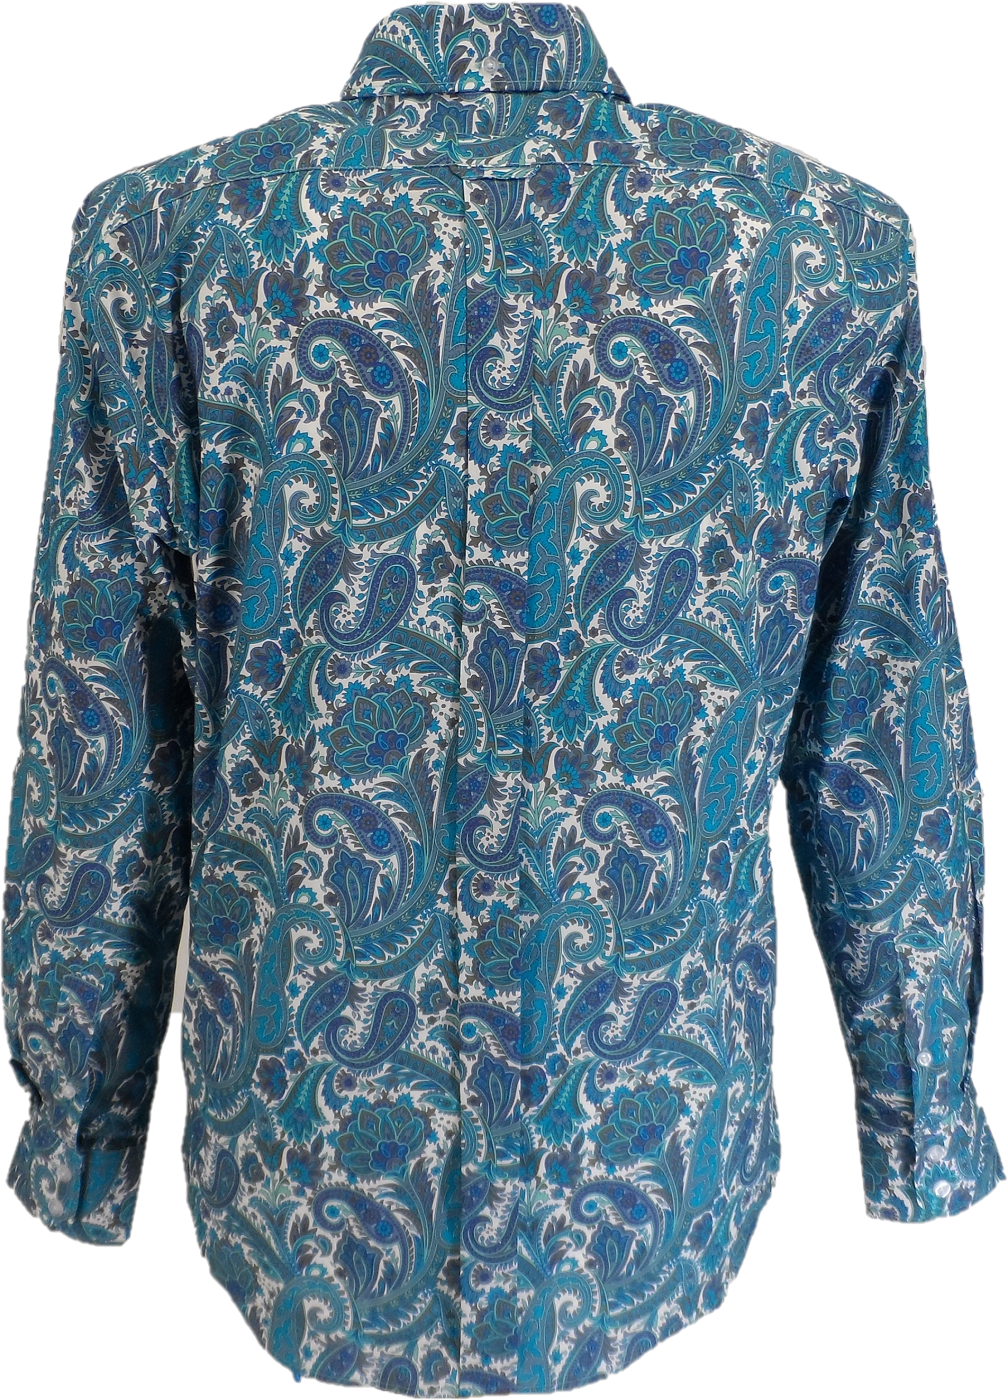 قميص Mazeys الرجالي من الستينيات والسبعينيات باللون الفيروزي القديم بيزلي